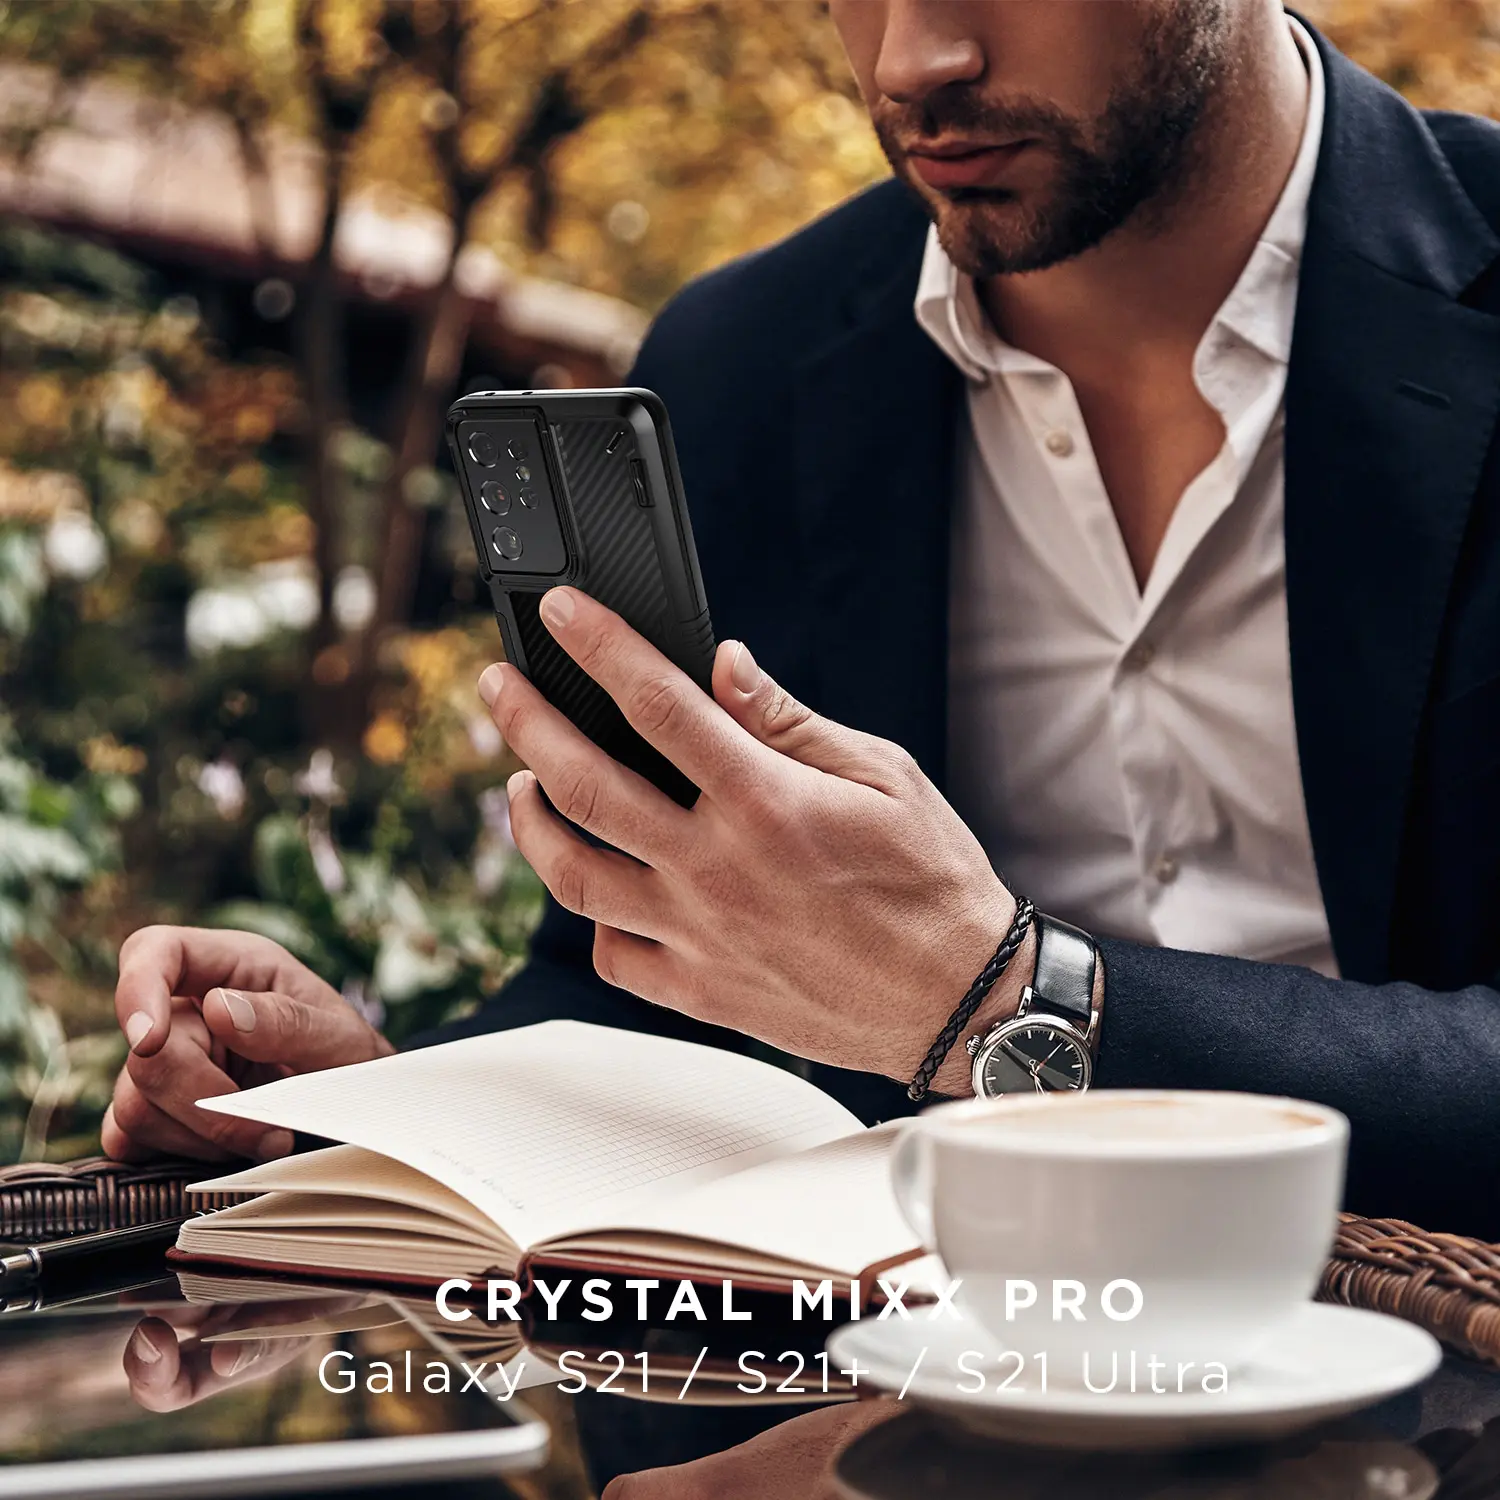 เคส VRS รุ่น Crystal Mixx Pro - Samsung Galaxy S21 Plus - สีดำ คาร์บอน